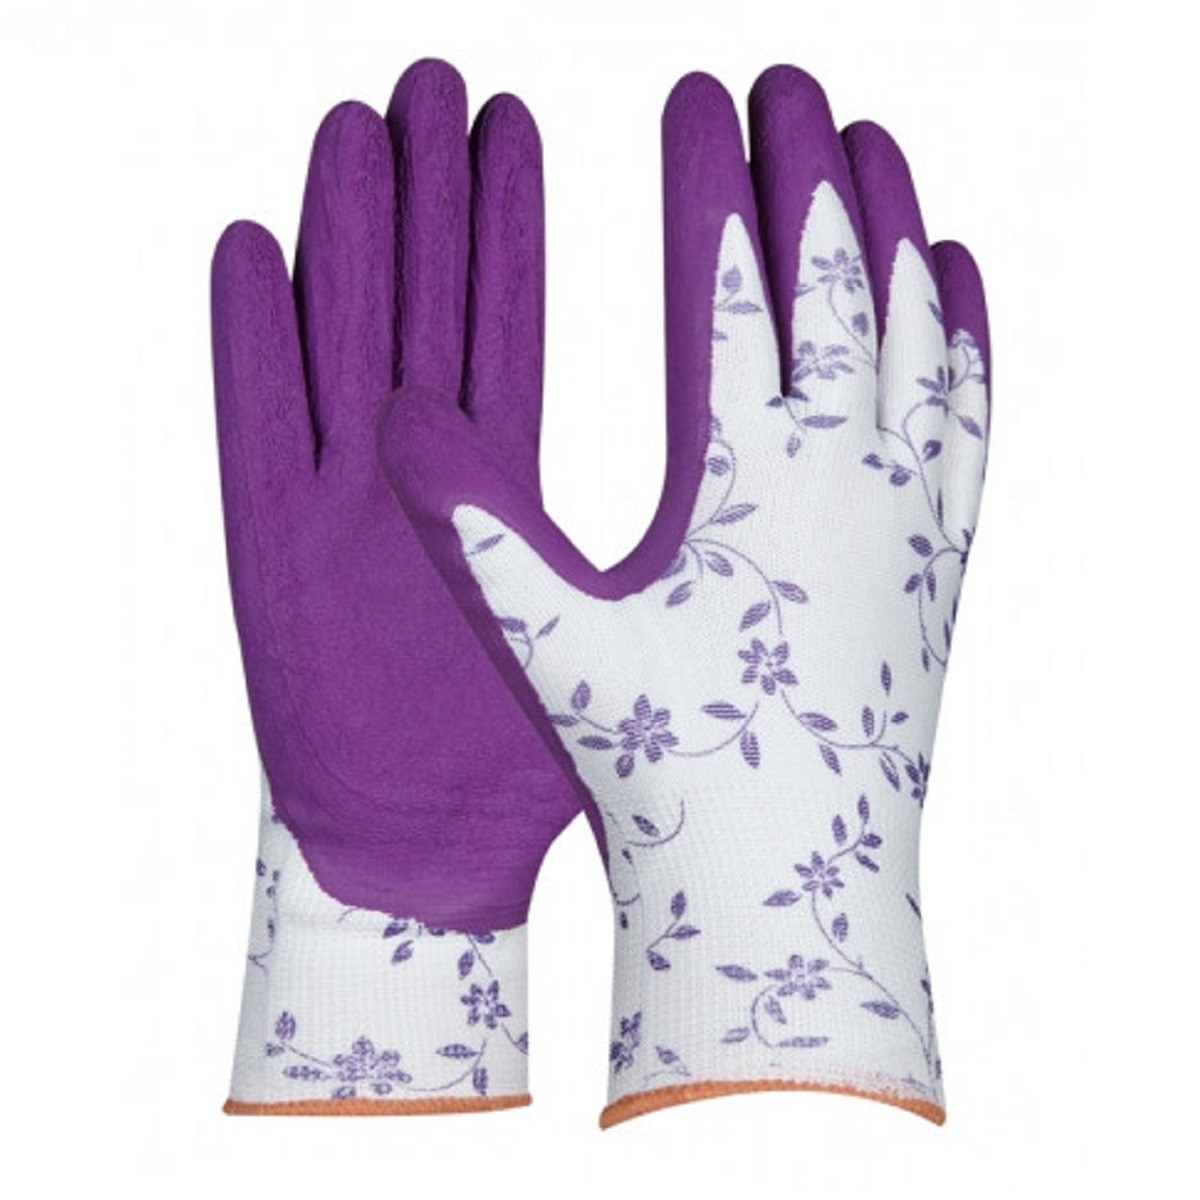 Dámské pracovní rukavice FLOWER - velikost 7 - 1 ks